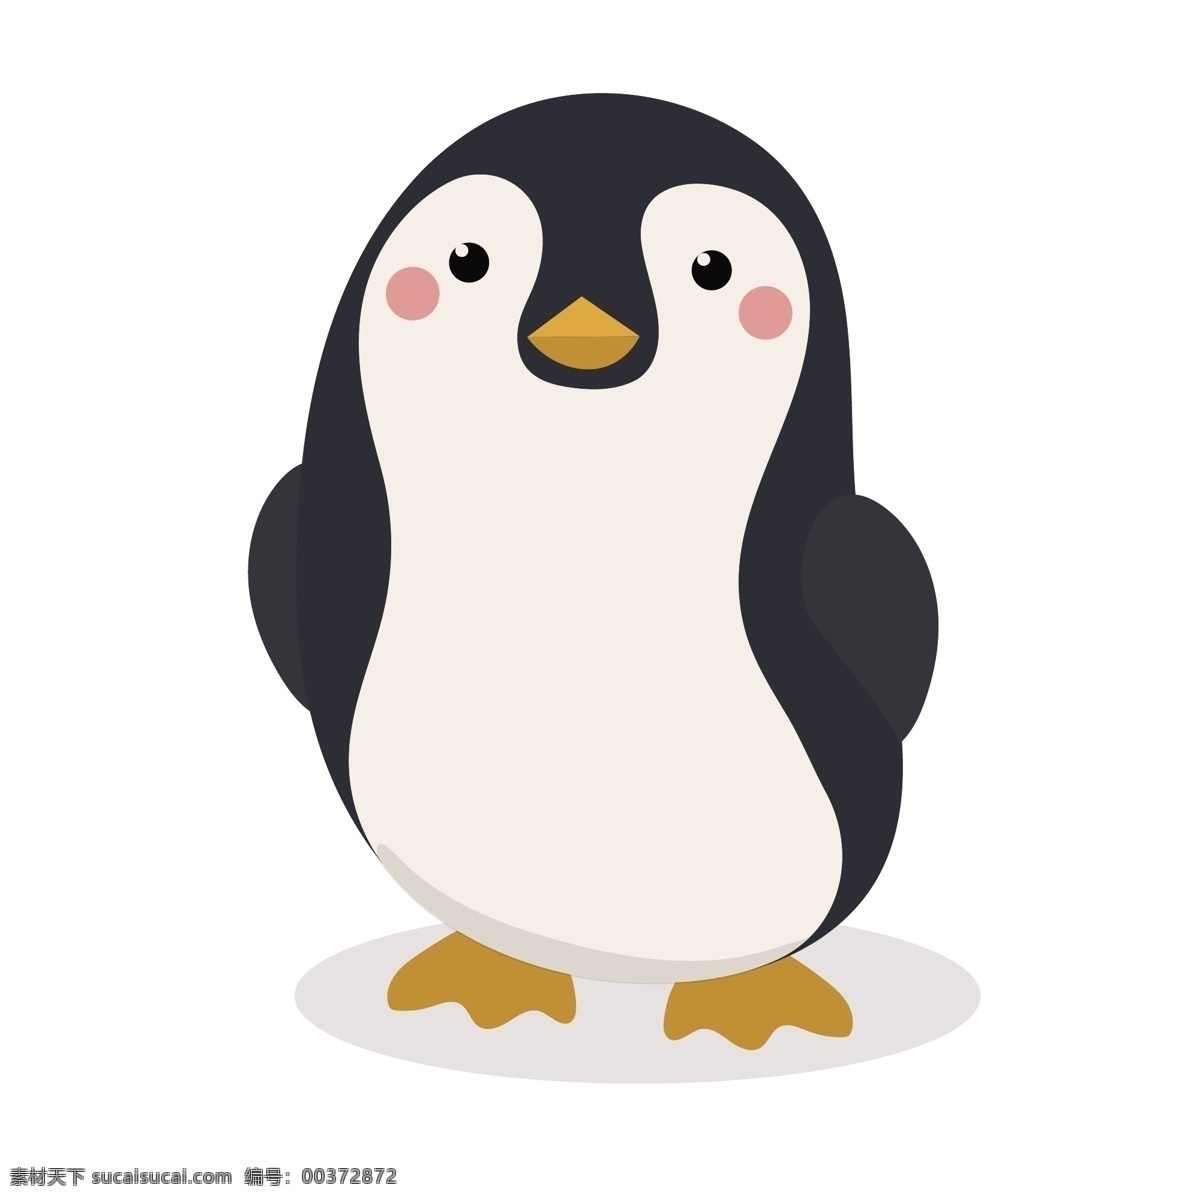 可爱 企鹅 矢量 小清新 卡通 卡通可爱 可爱卡通 可爱的 卡通的 卡通的企鹅 可爱企鹅